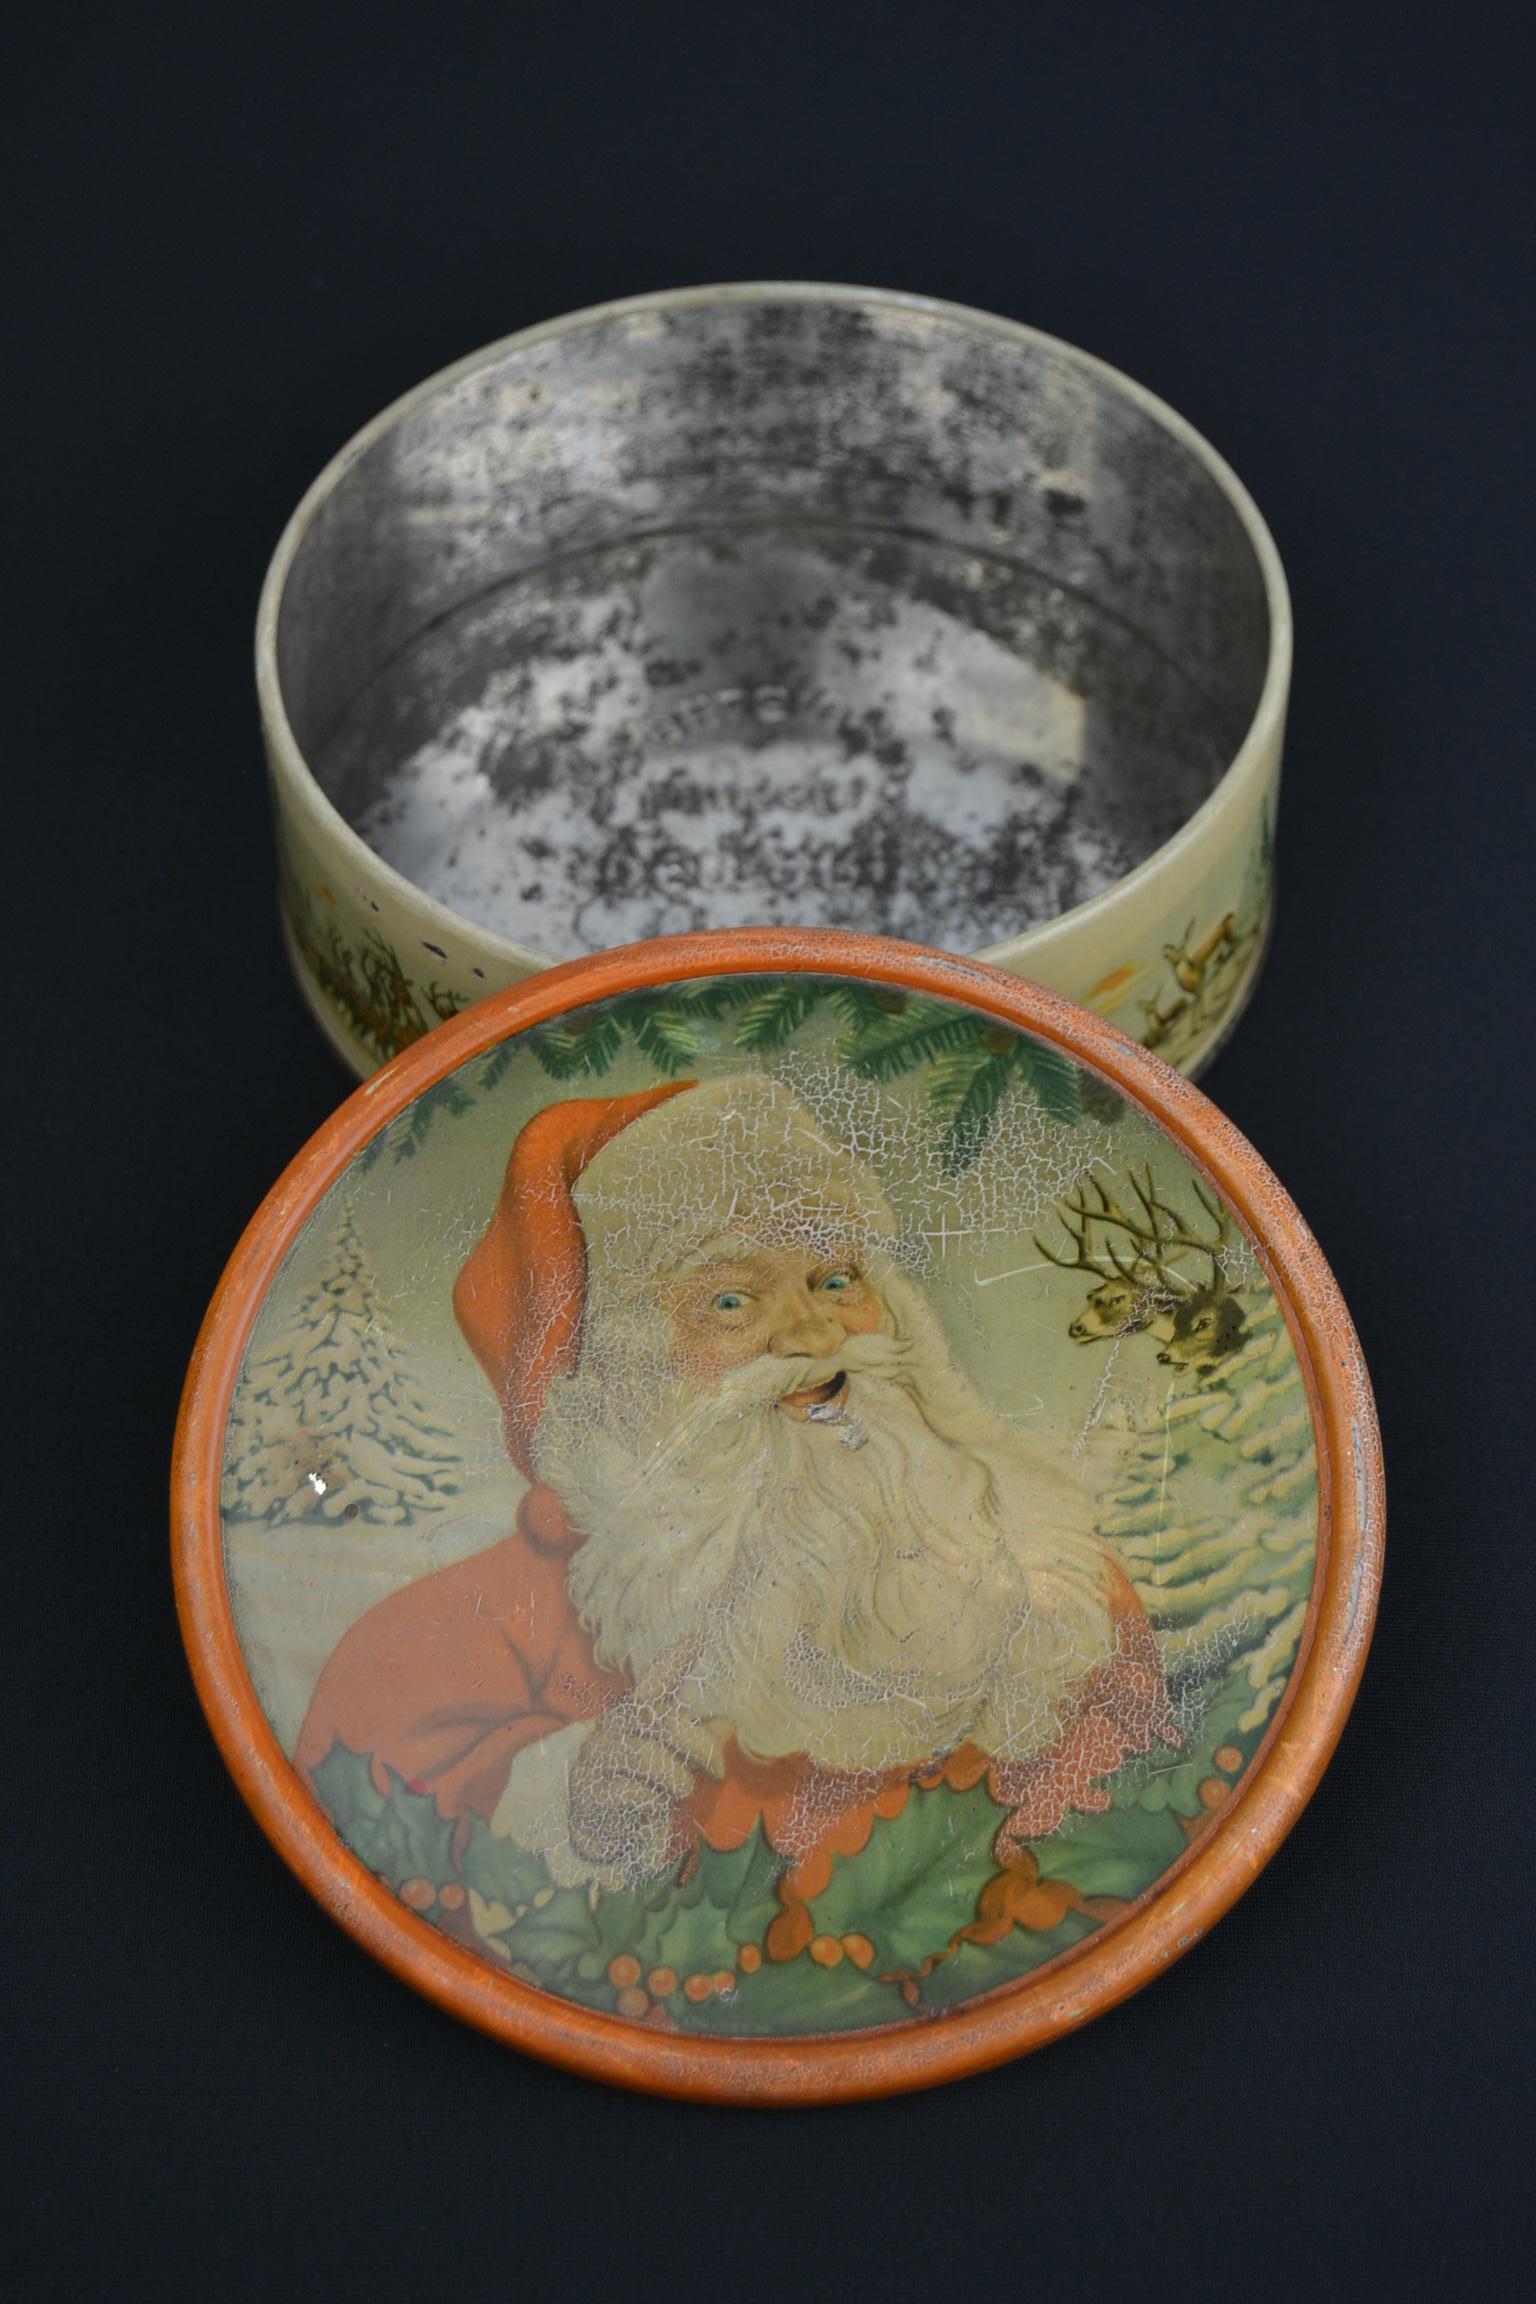 Christmas Tin with Santa Claus, Belgium 11